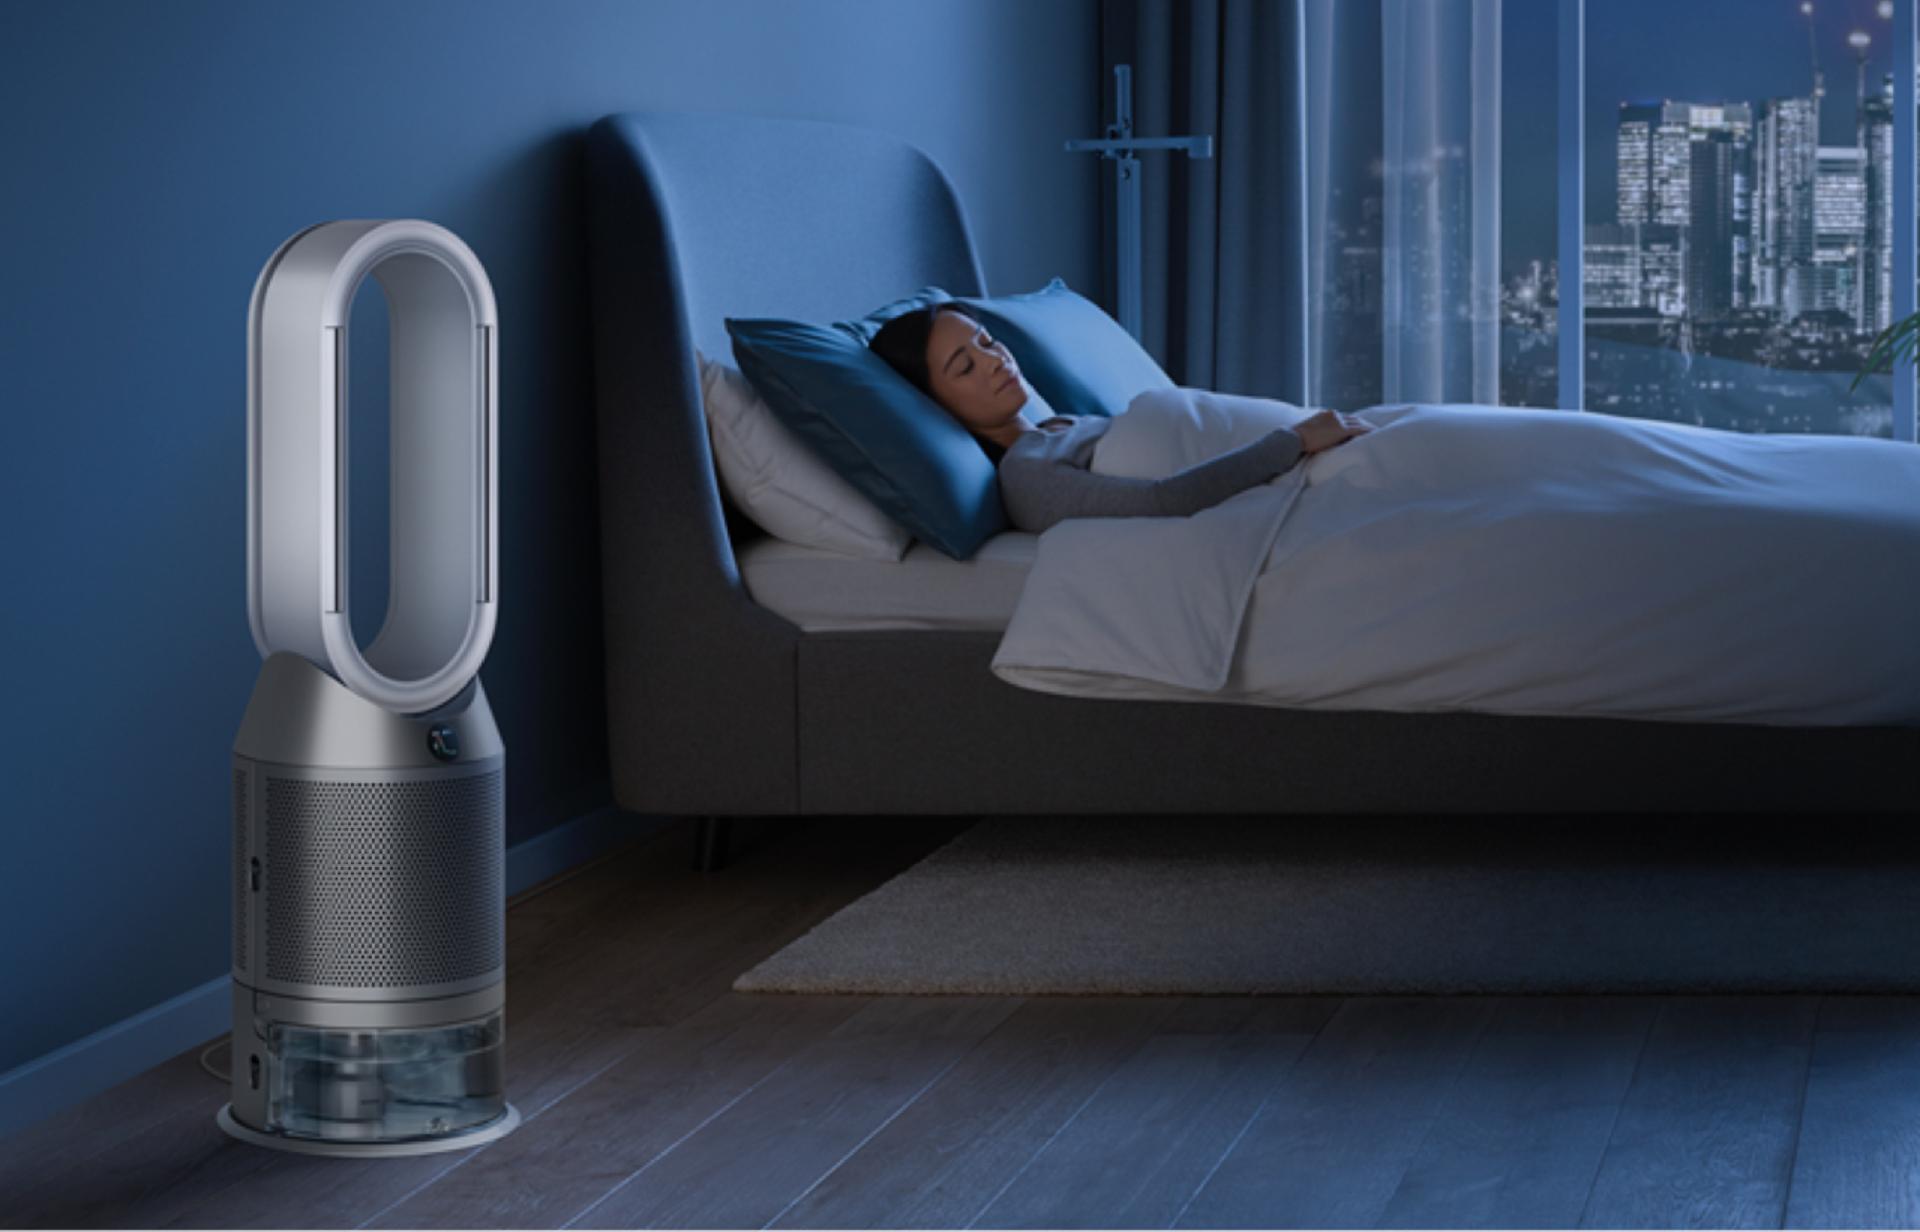 Как использовать функцию таймера сна на вашем очистителе-увлажнителе воздуха? Пошаговая инструкция приведена в данном видео: